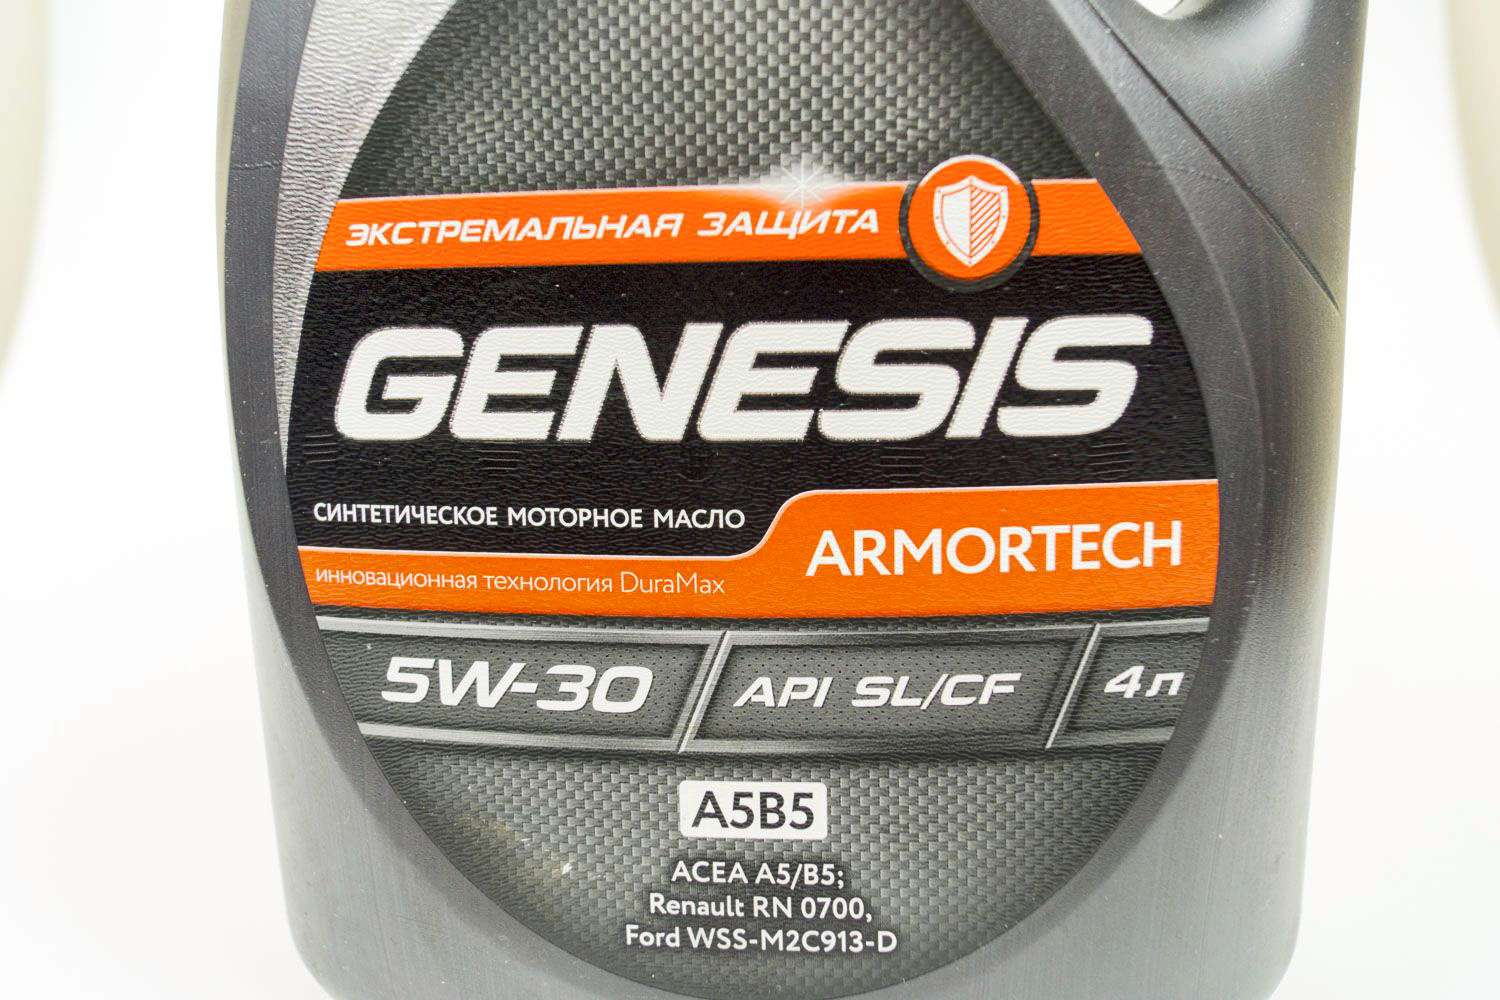 Масло 5w30 acea a5 b5. Genesis Armortech 5w-30. Lukoil Genesis Armortech 5w-30. Genesis Armortech 5w30 защита. Lukoil Genesis 5w30 SL/CF a5/b5.